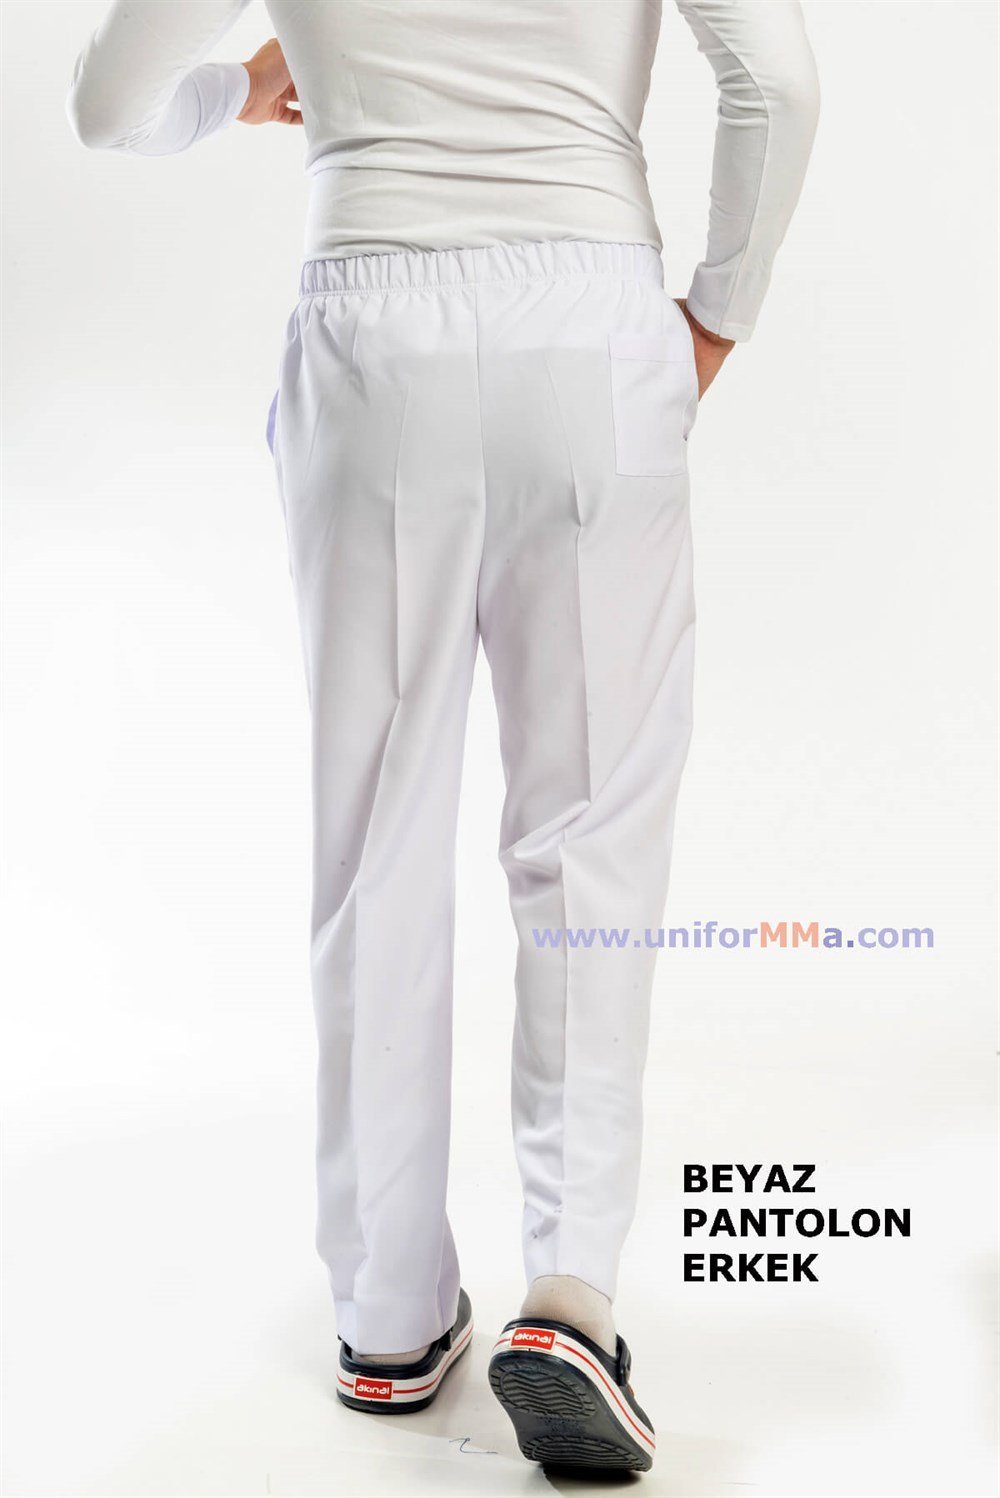 Doktor Pantolonu | Hemşire pantolonu | Sağlıkçı Pantolonu